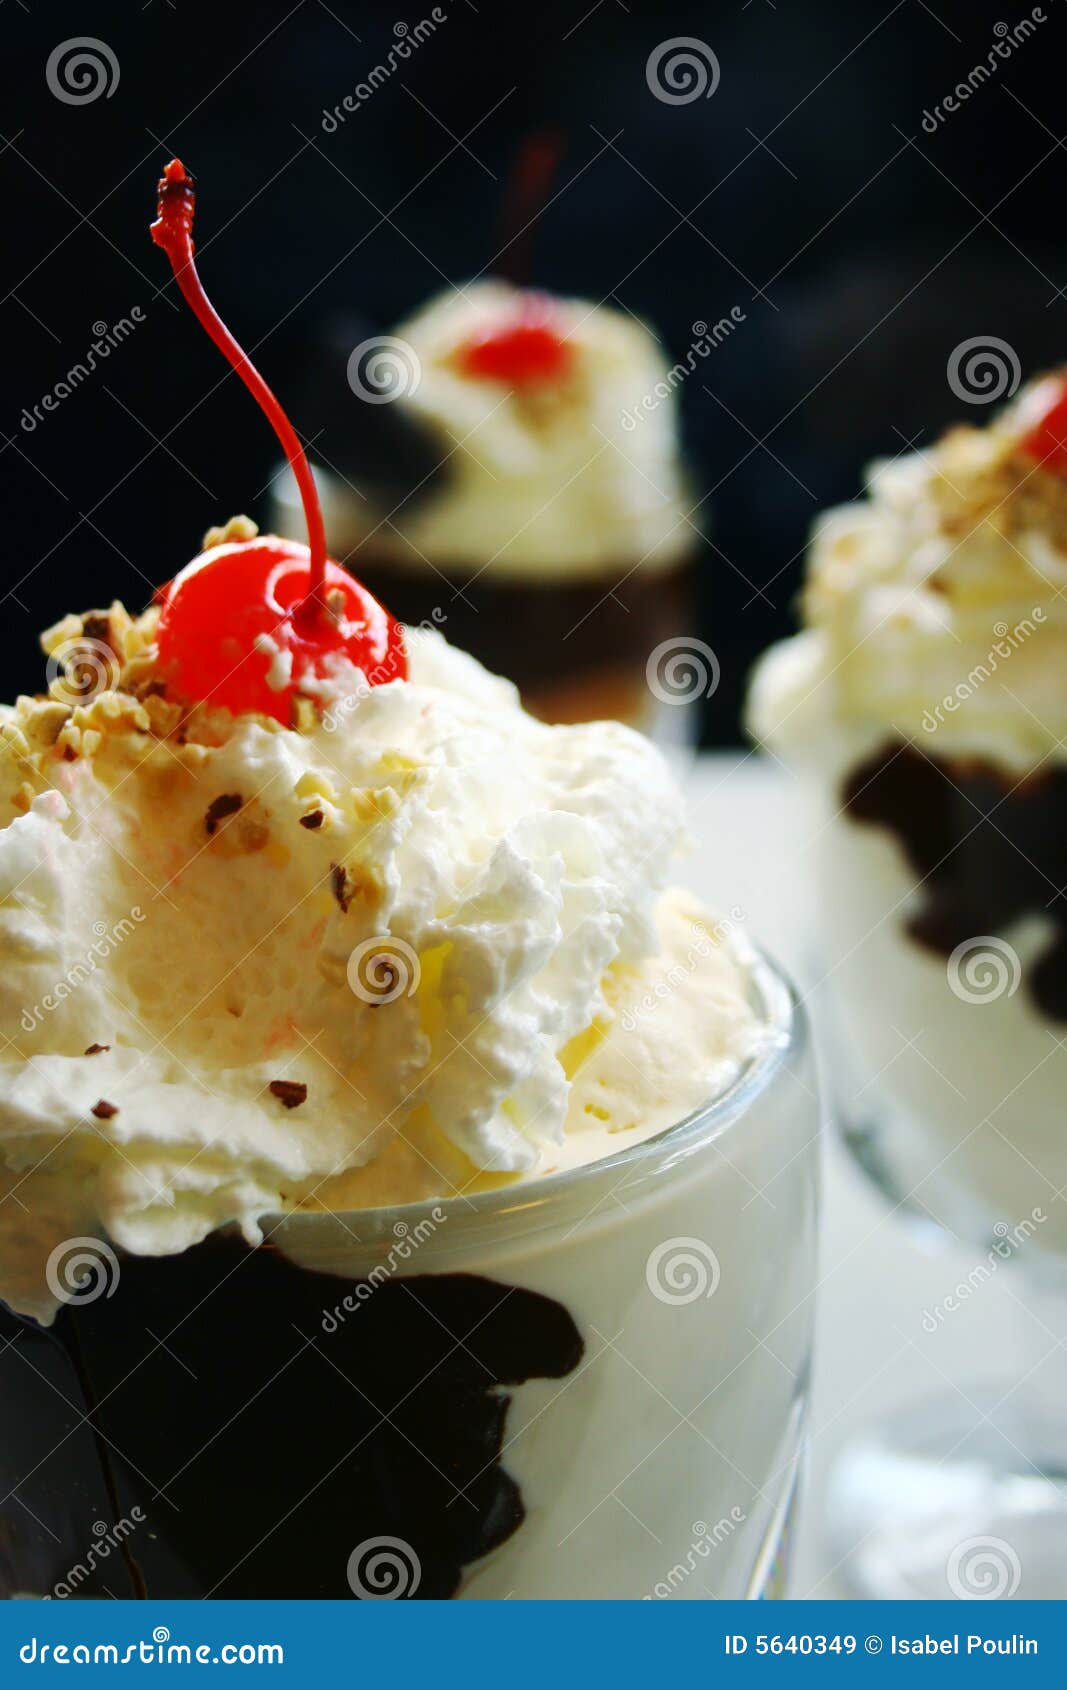 巧克力冰淇凌圣代冰淇淋 免版税图库摄影 - 图片: 32303547